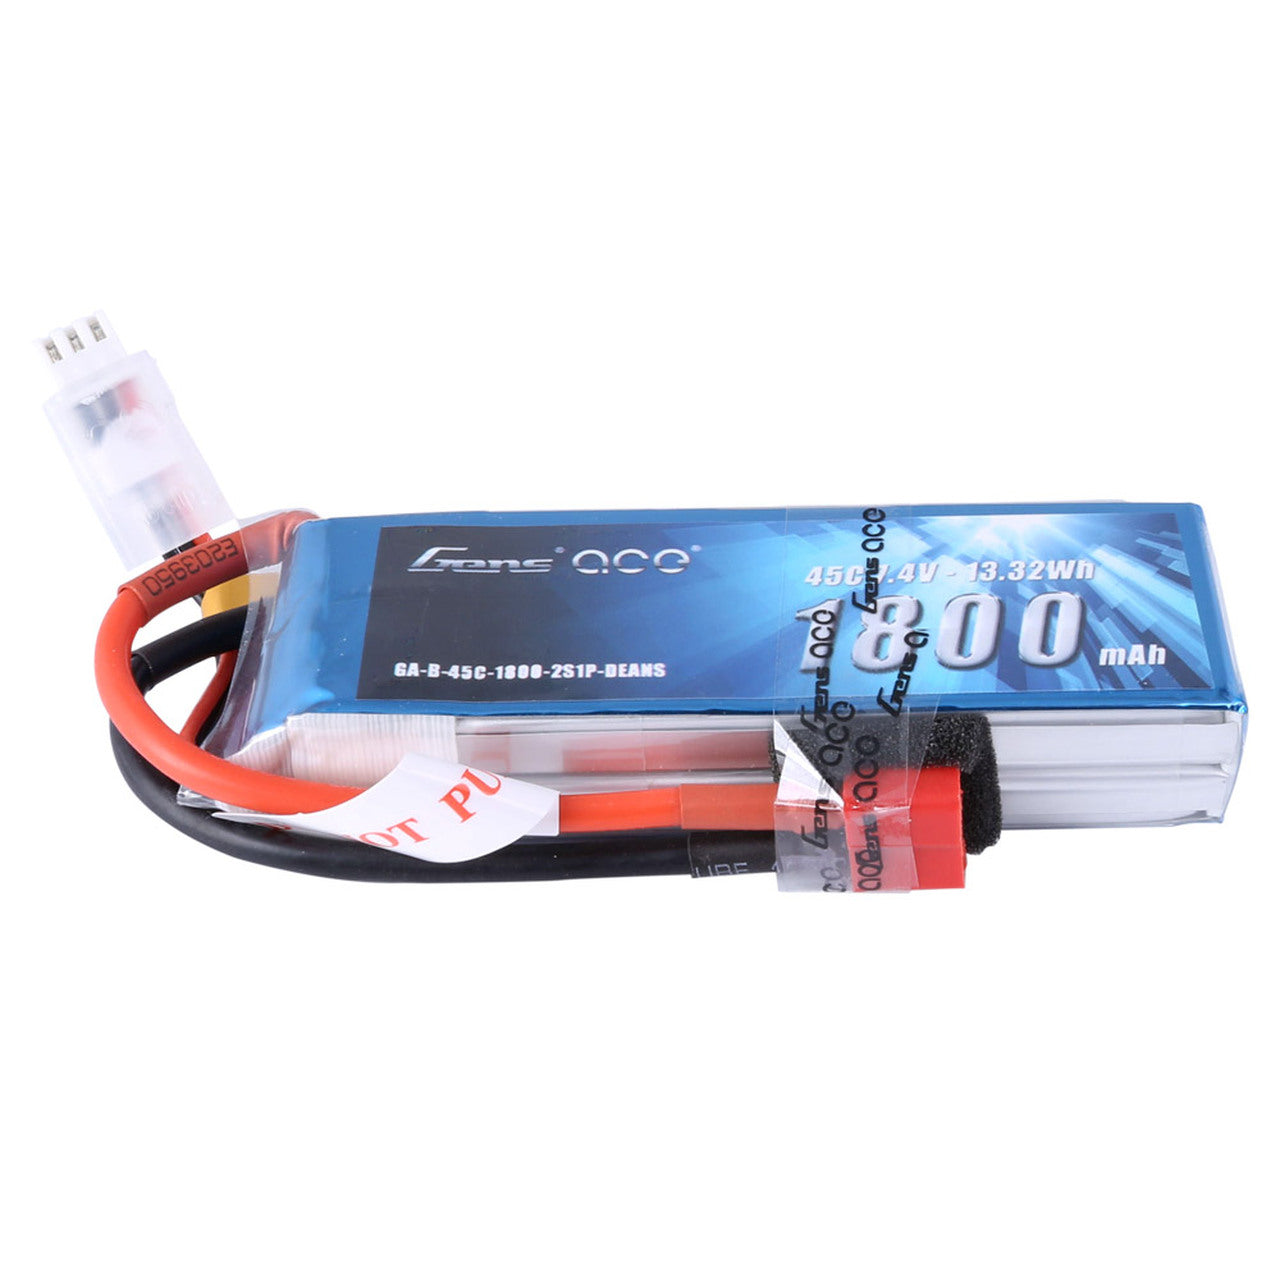 Gens Ace - 1800mAh 7.4V 45C 2S1P - Soft Case Lipo Battery - Hobby Addicts